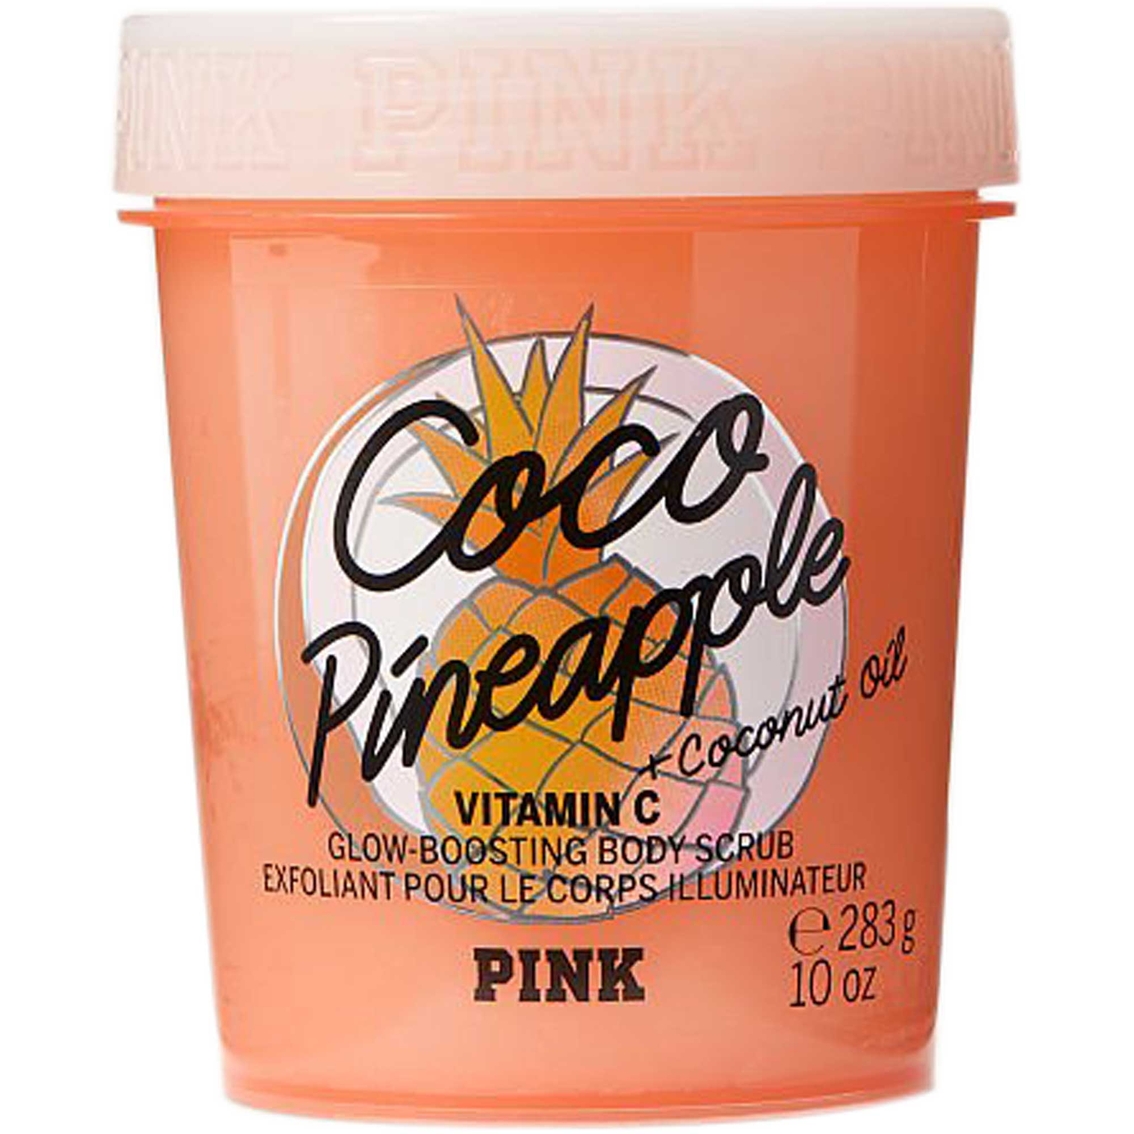 Victoria's Secret Pink Coco Pineapple Body Scrub 10 oz.